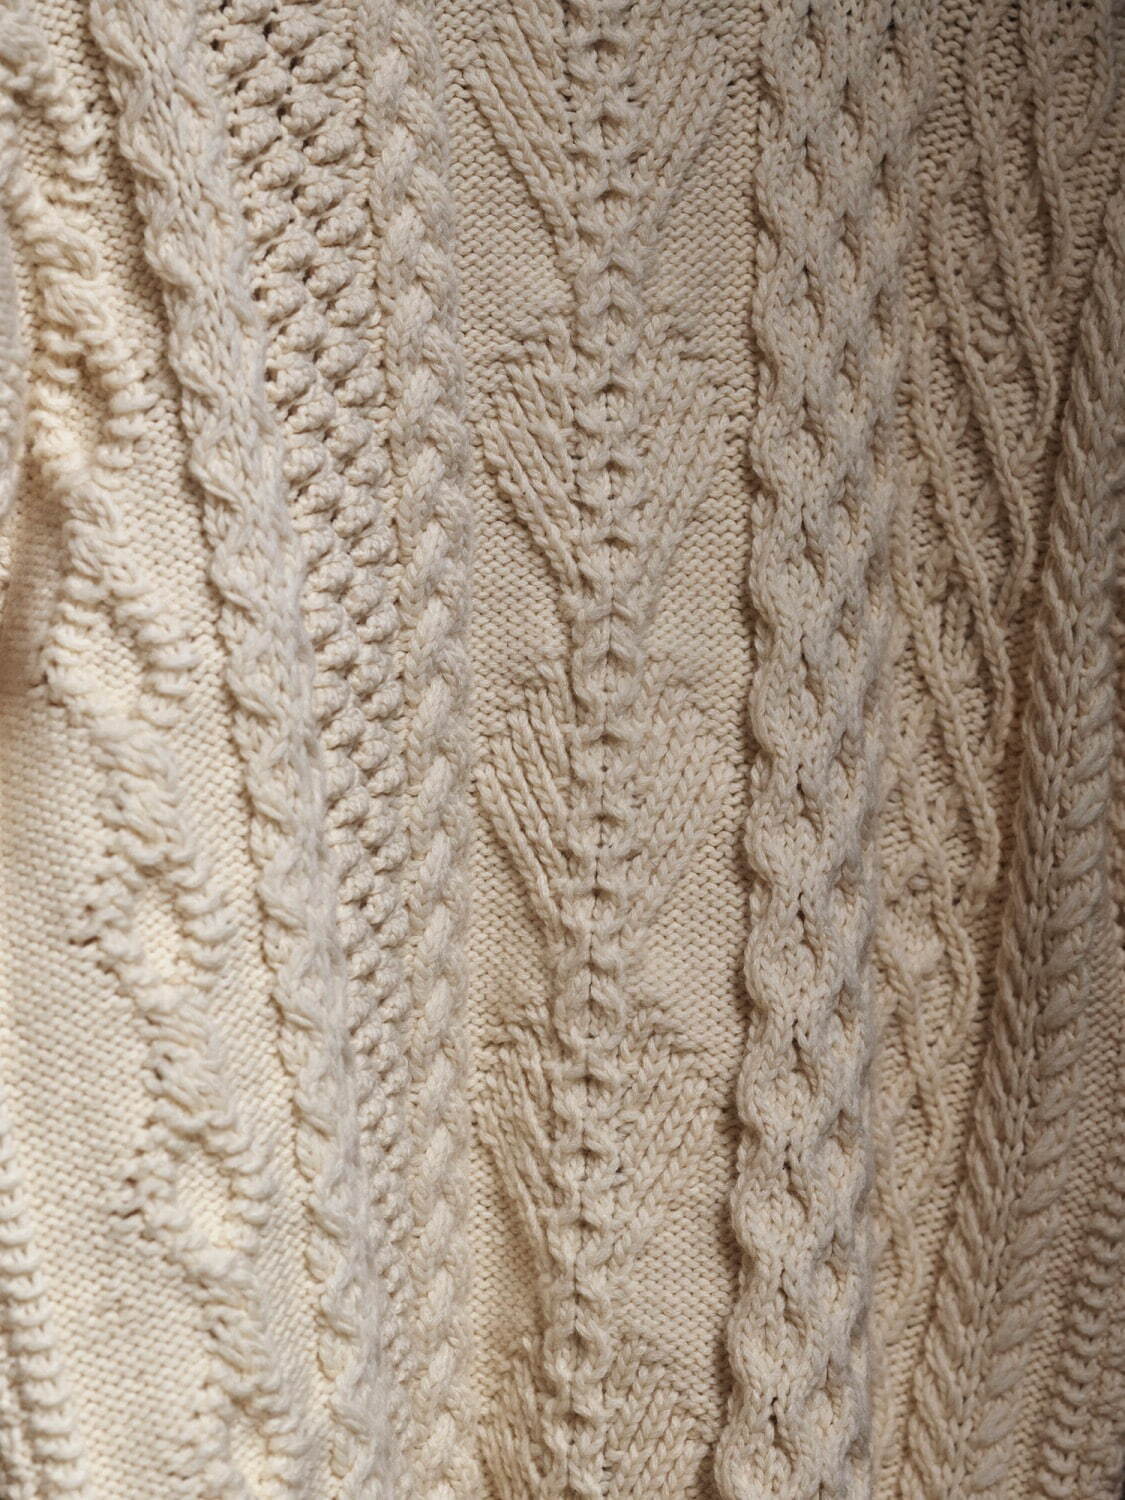 米富繊維「ディスイズアセーター」新作ニット、多様な編み柄の“21世紀